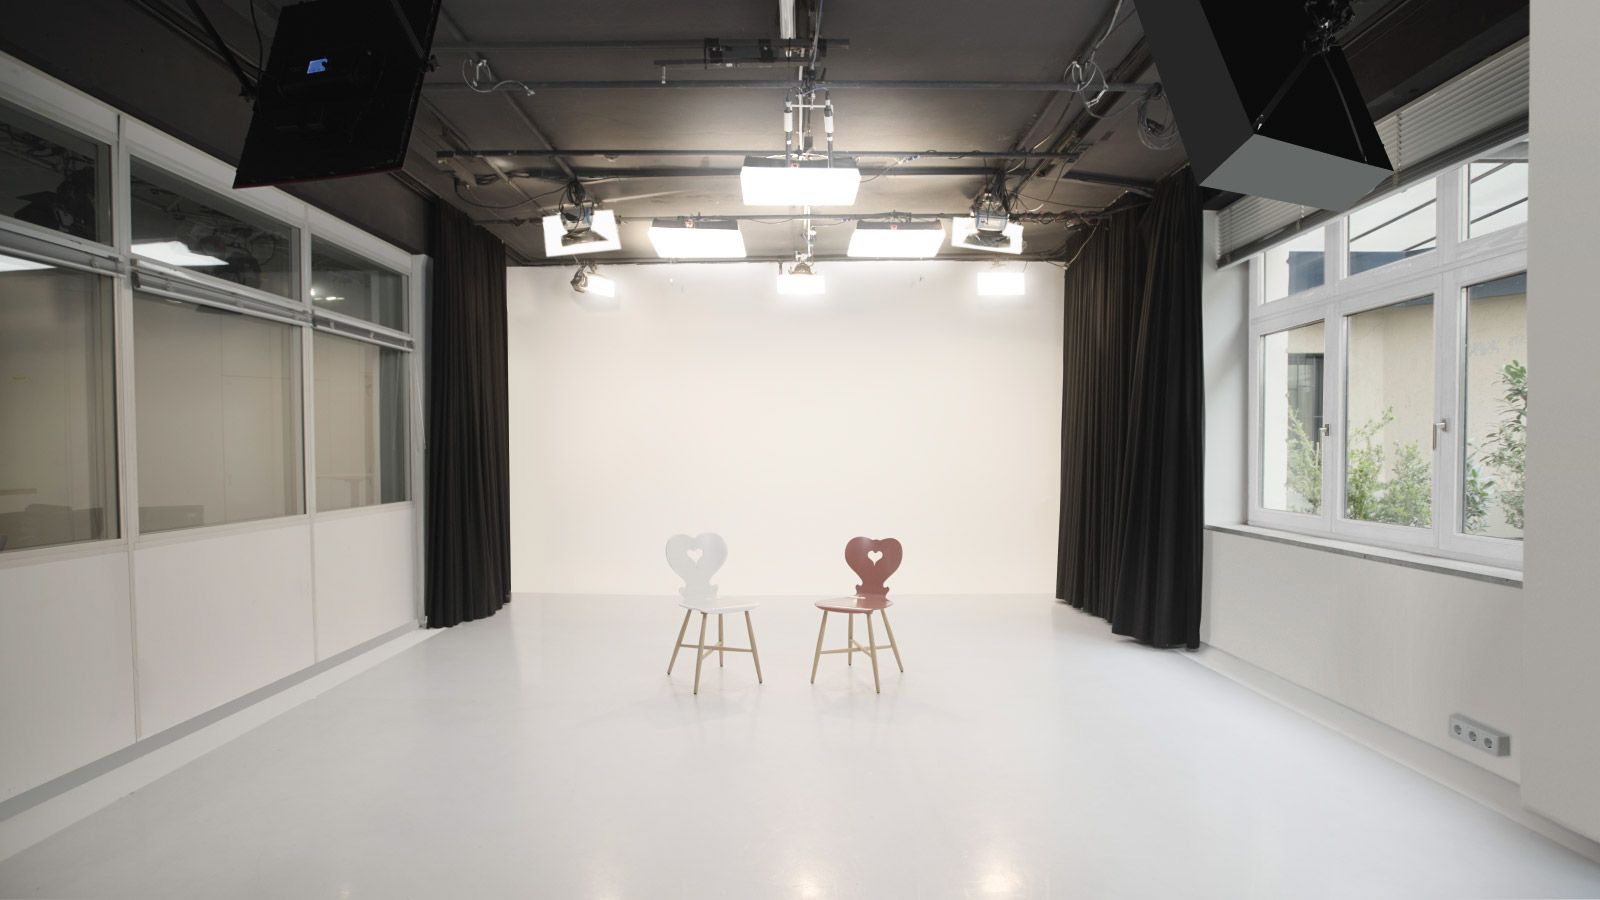 Film studio, Rent studio, Casting studio - Munich PictureElements